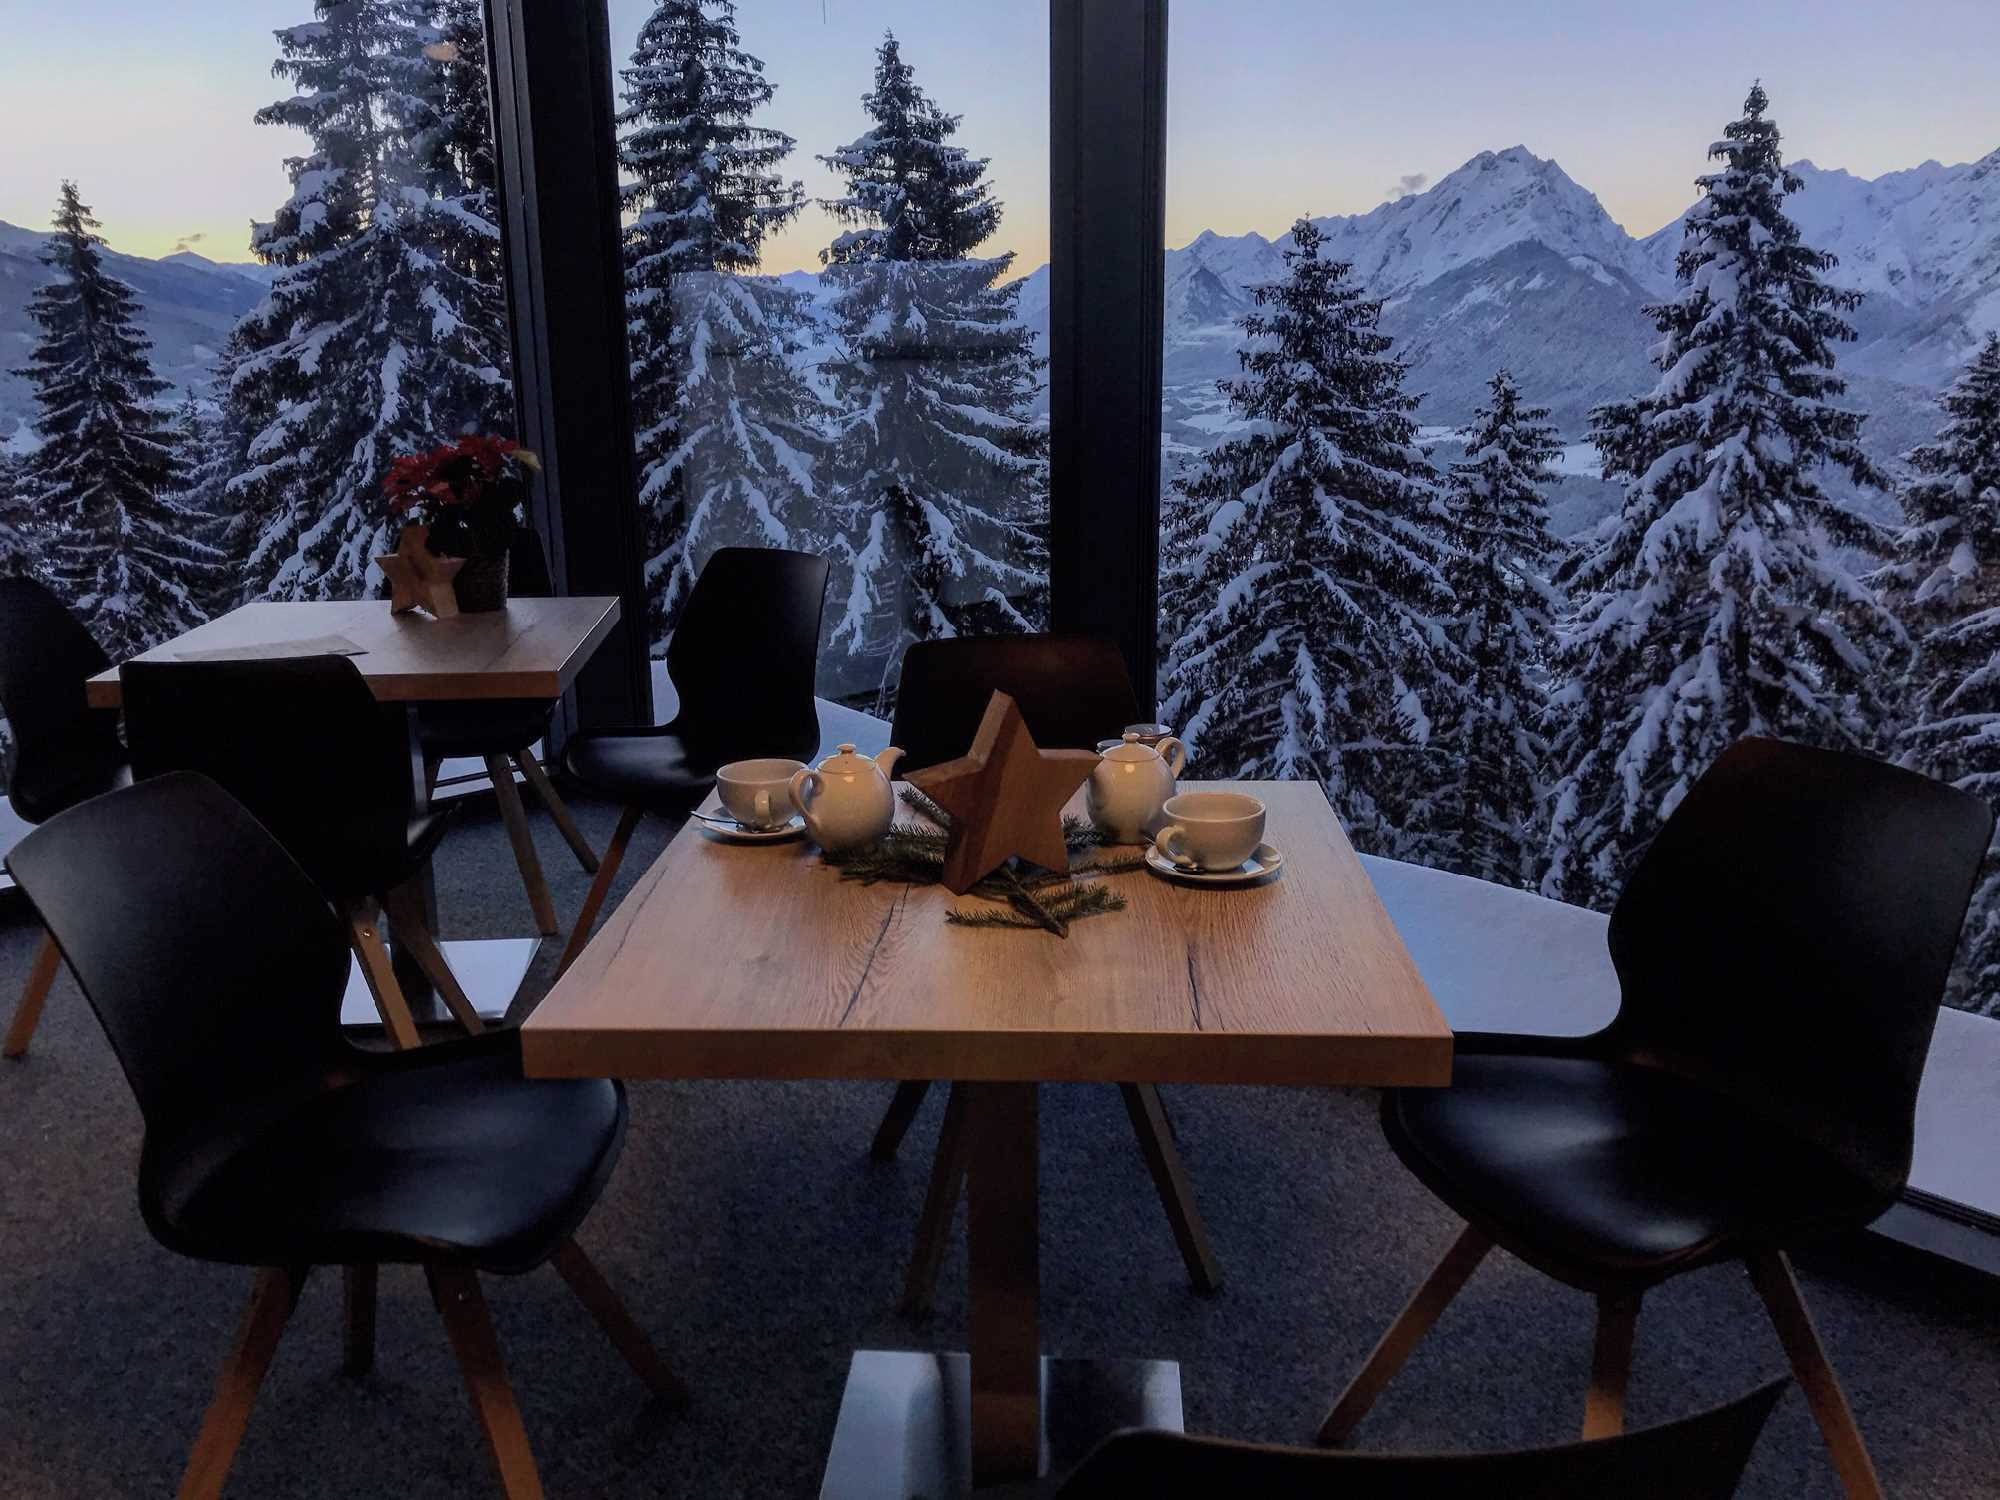 Suchst du eine schöne Karwendel Hütte im Winter? Dann solltest du diesen Beitrag lesen!